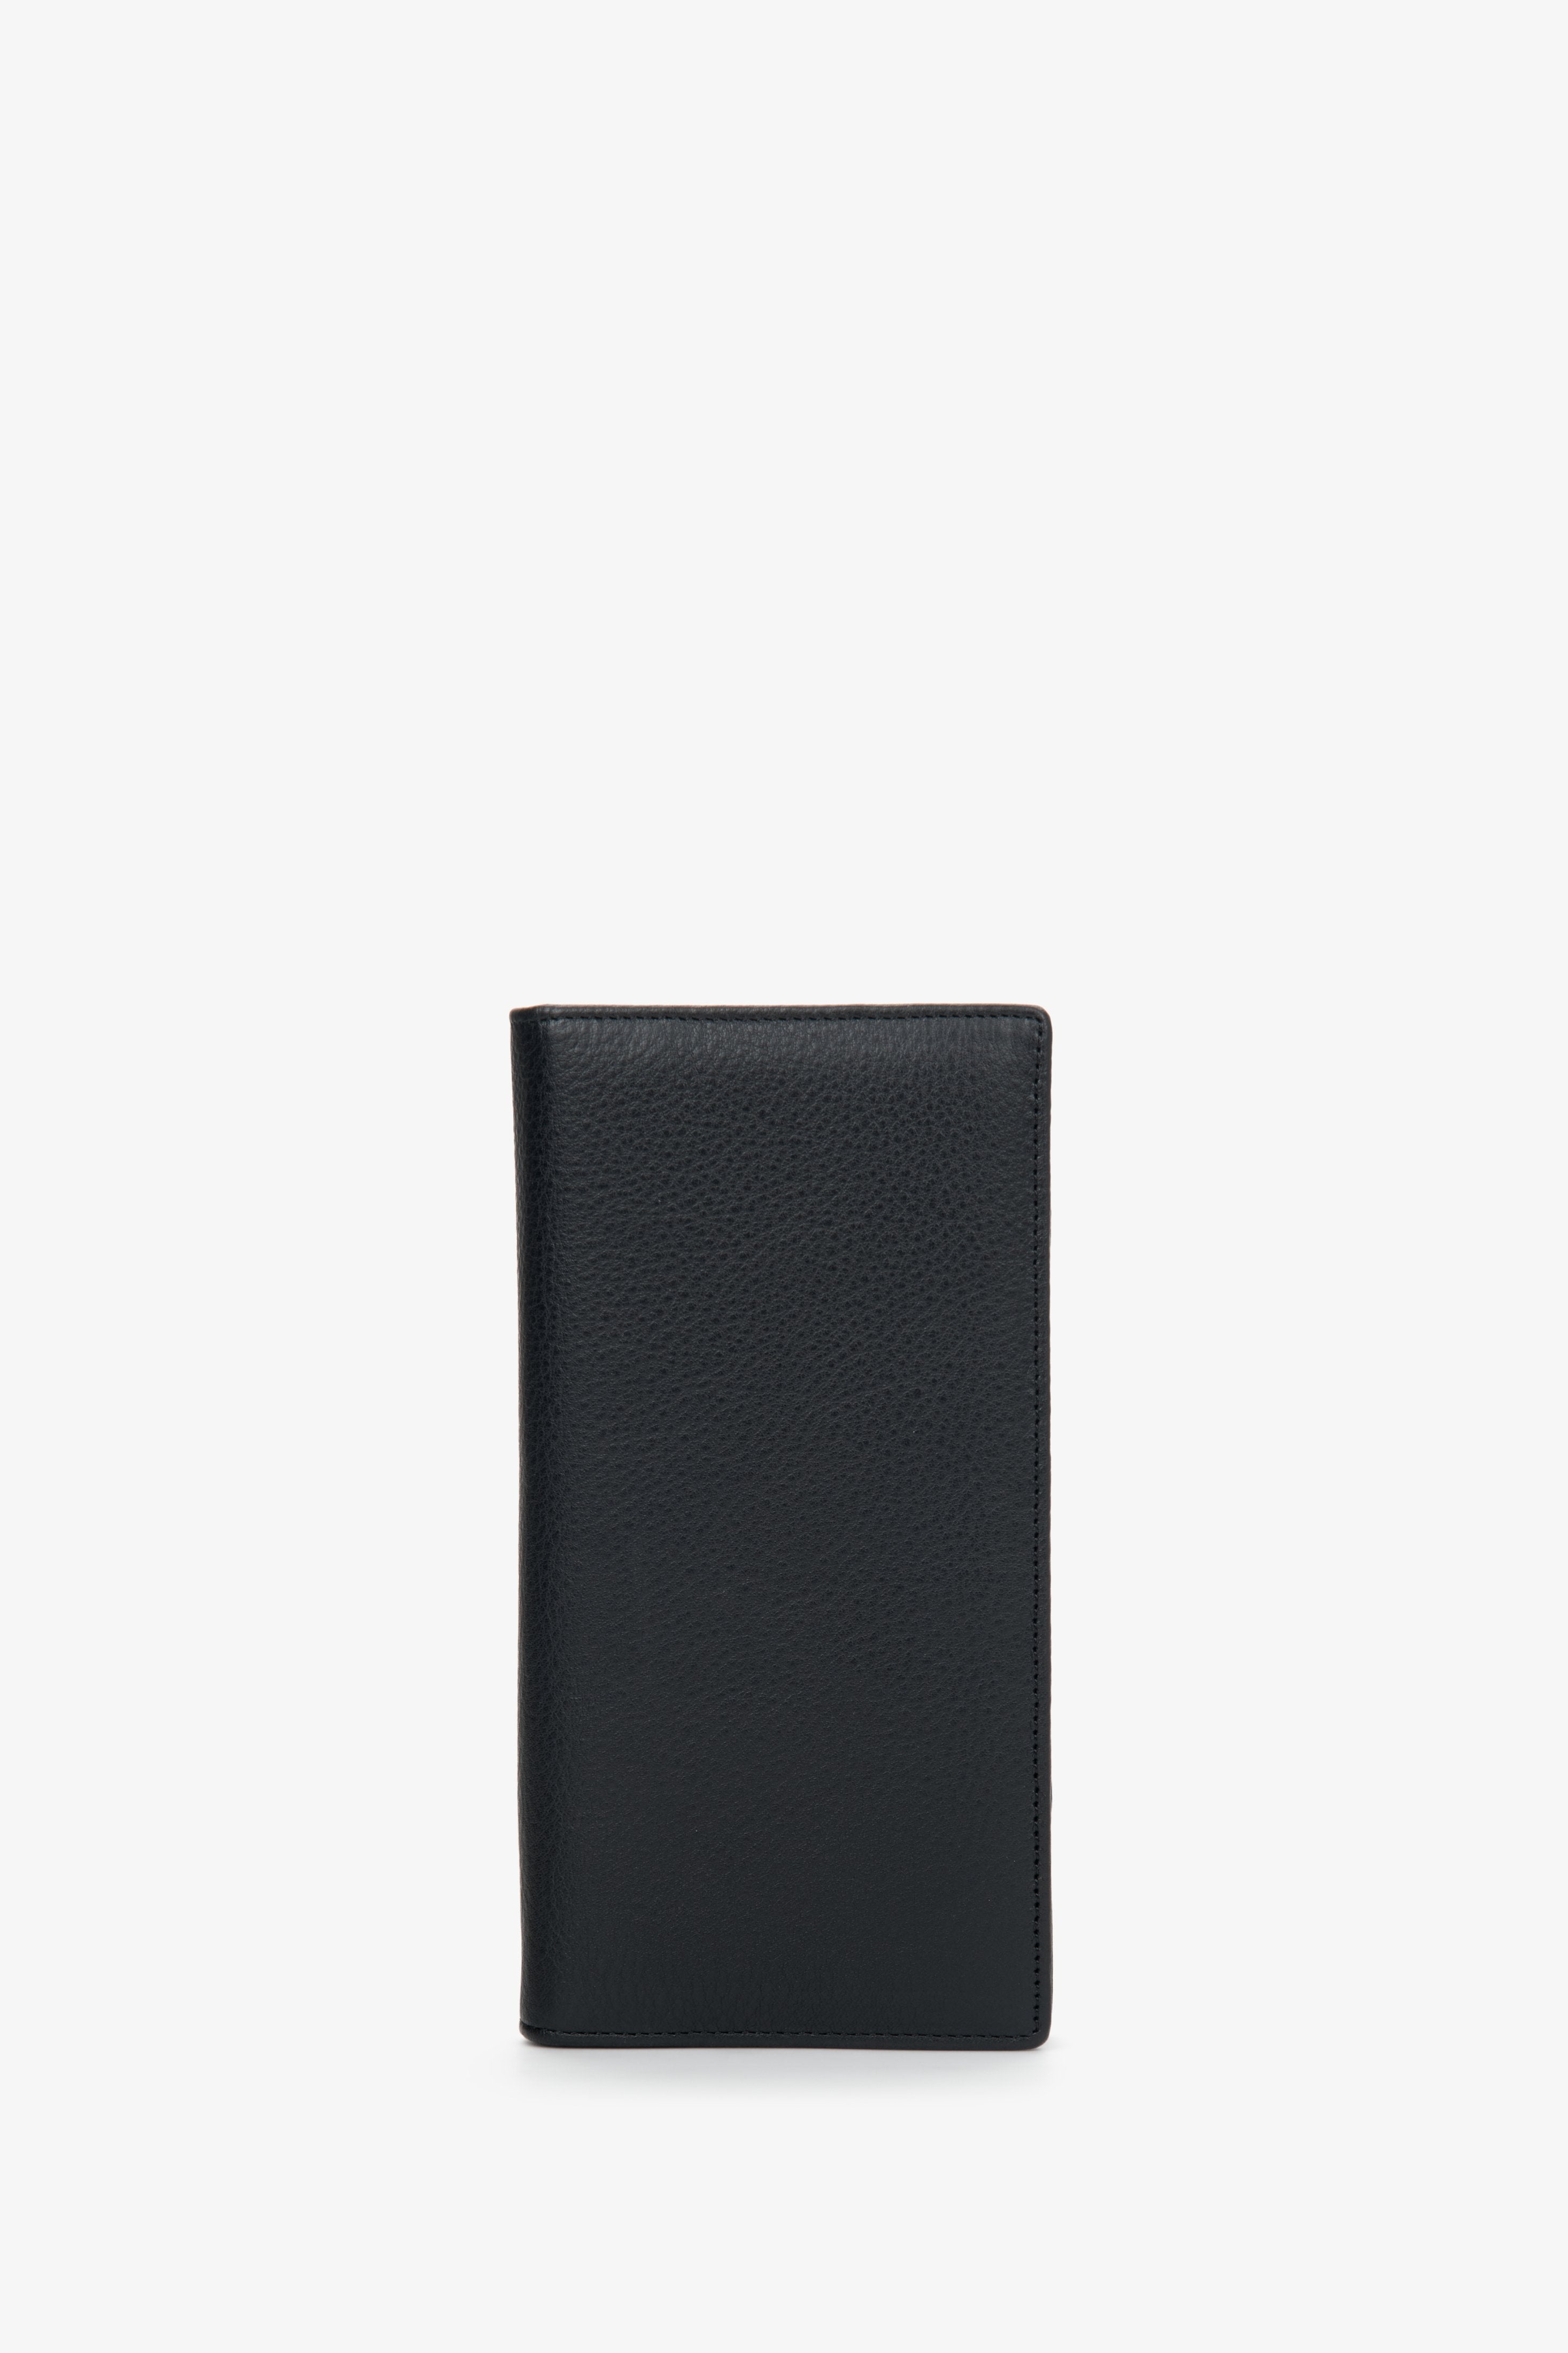 Czarny pojemny portfel męski ze skóry naturalnej Estro ER00110893